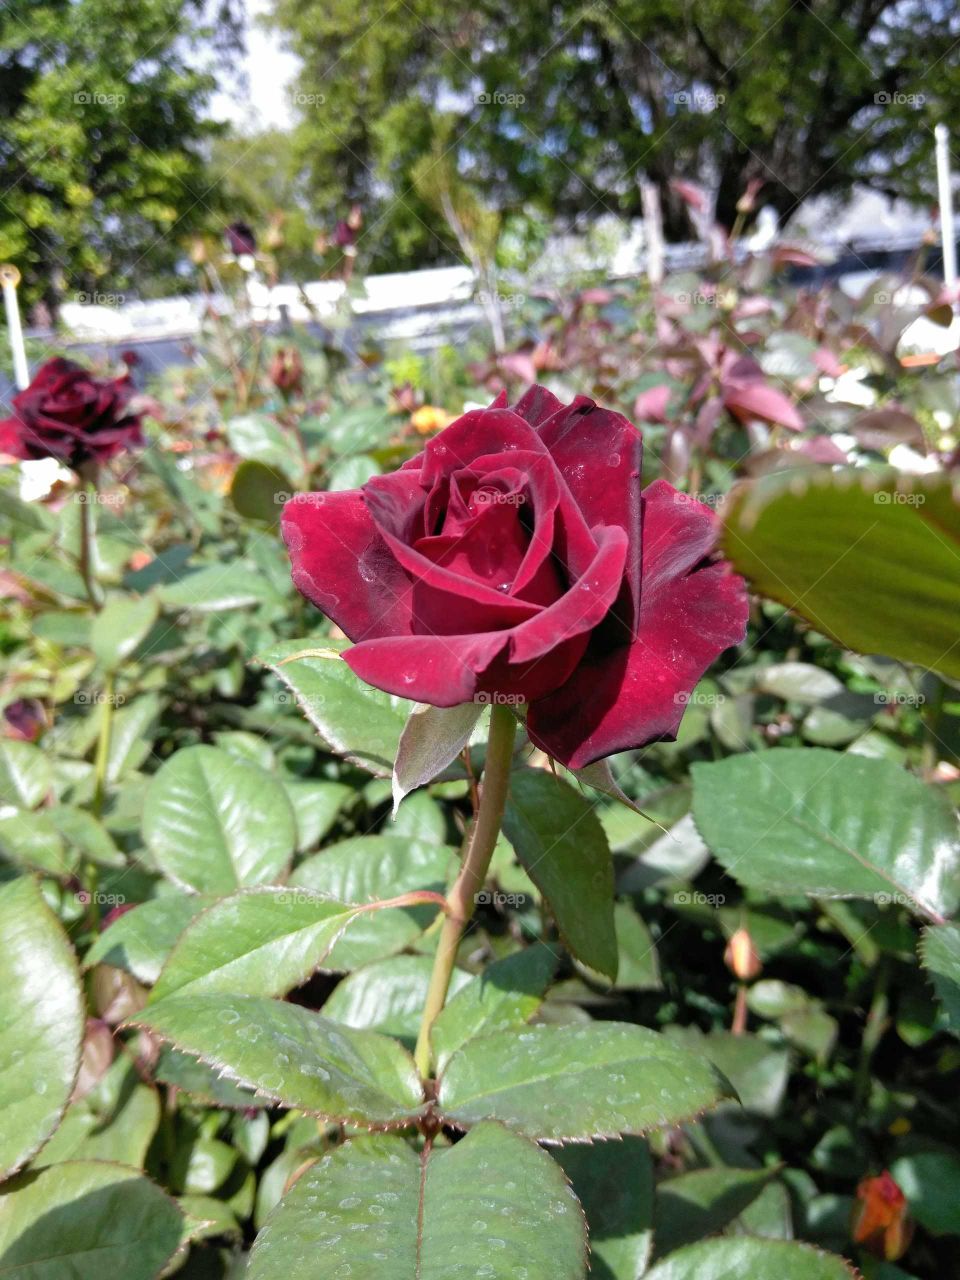 velvet red rose